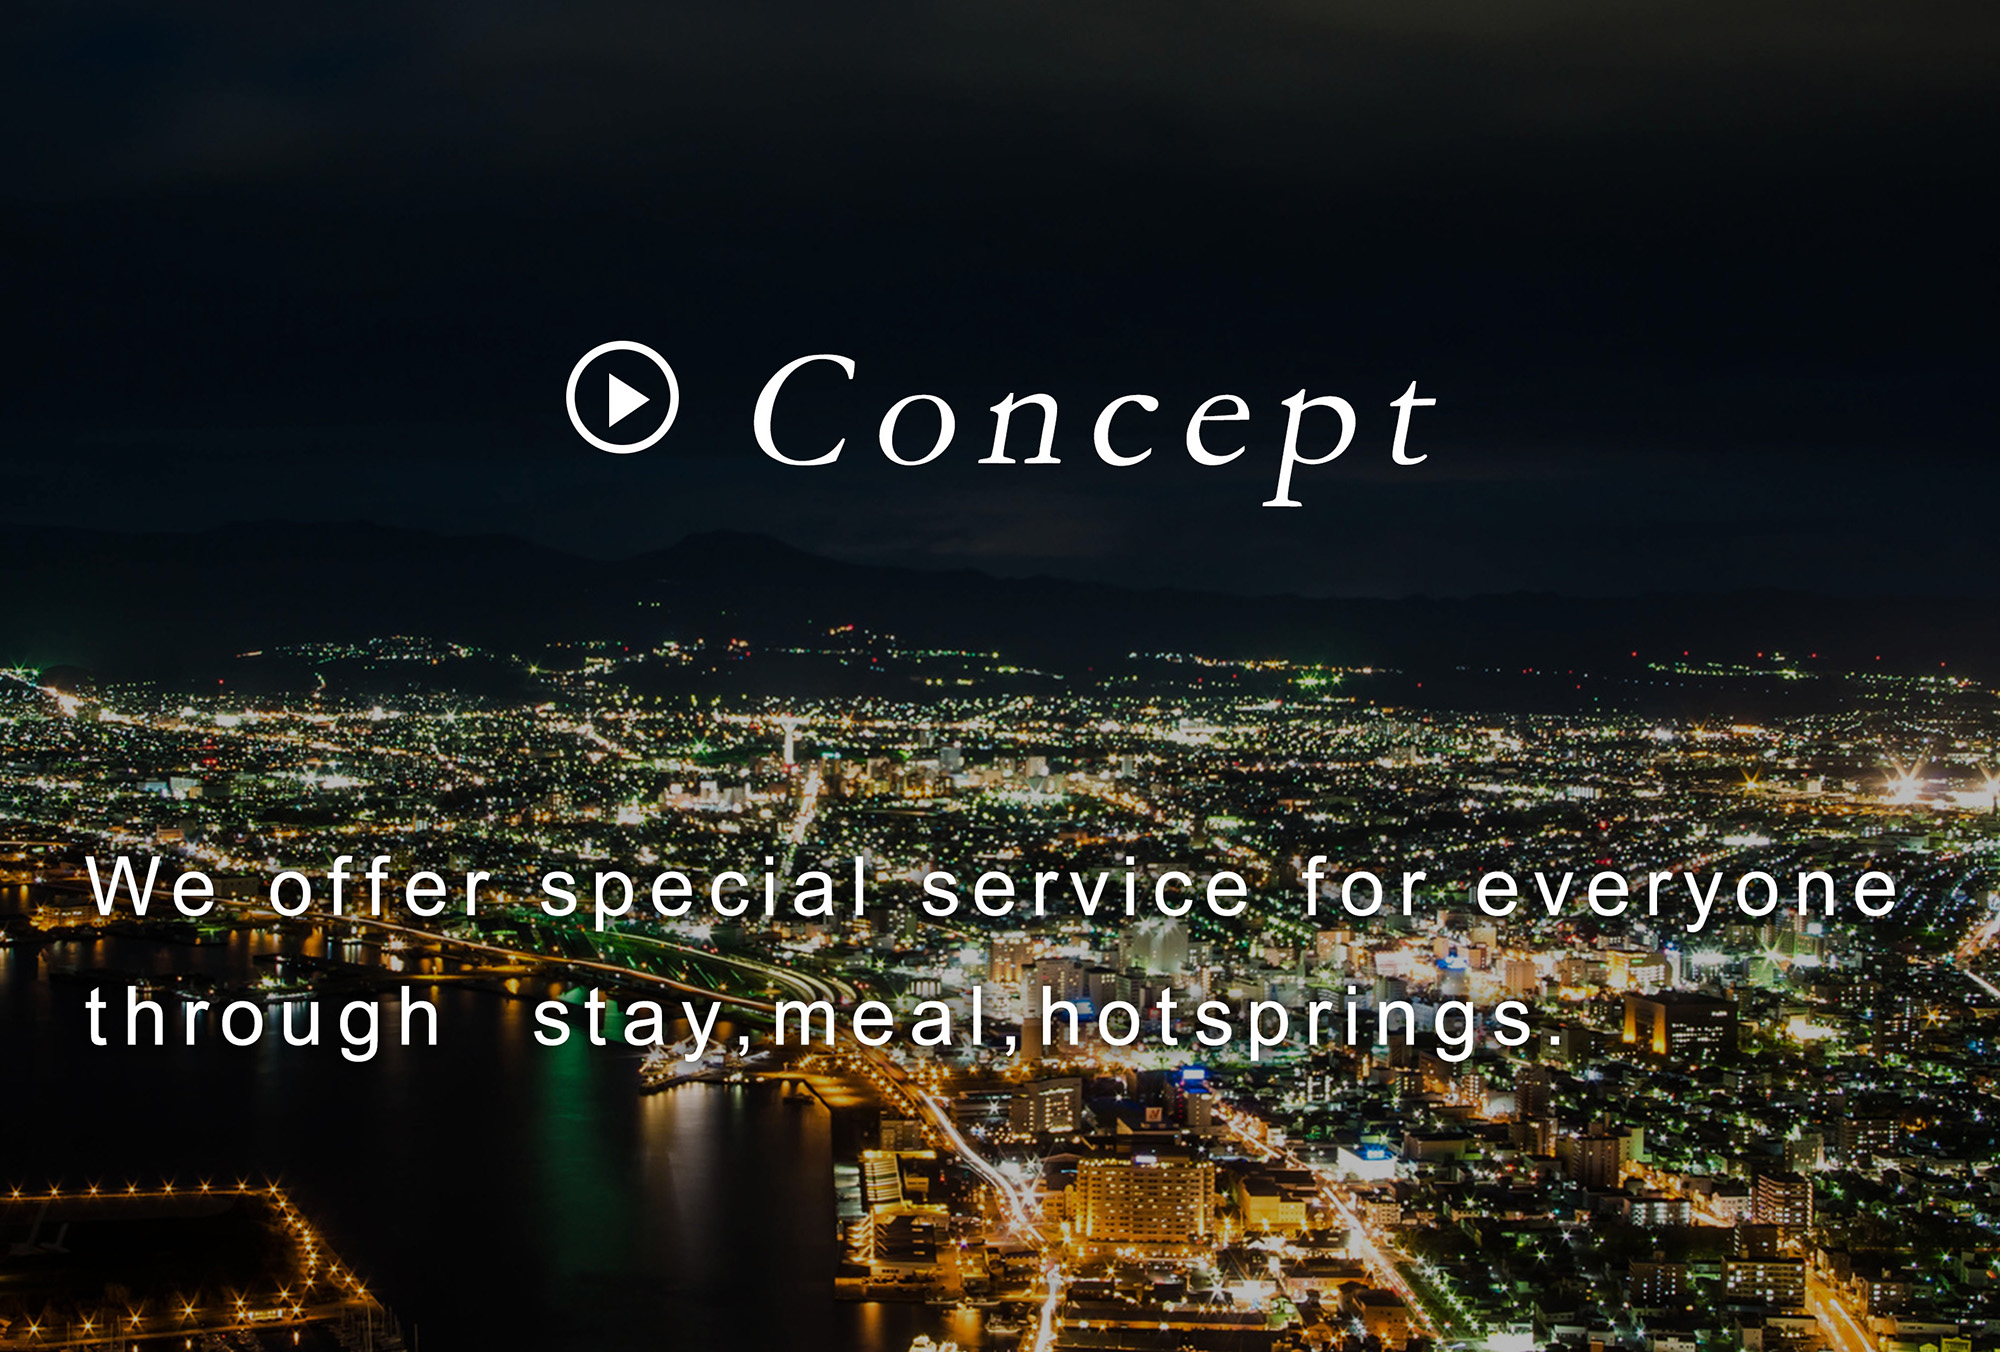 Concept ホテルテトラグループでは宿泊・お食事・温泉を通じ、各地域にあったサービスをご提供しています。